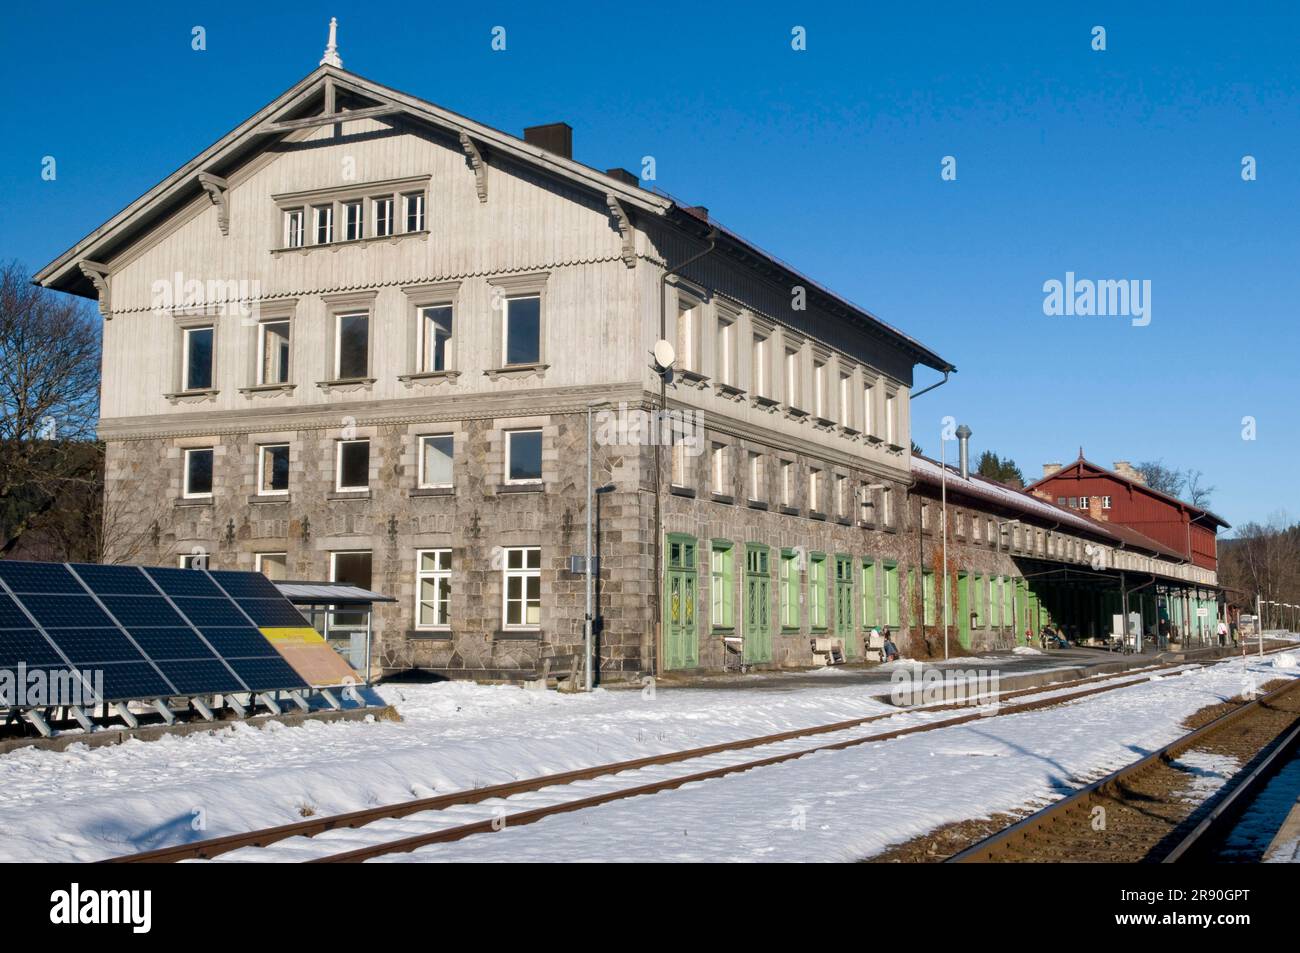 Train station, Bayrisch Eisenstein, Lower Bavaria, Bavaria, Germany Stock Photo